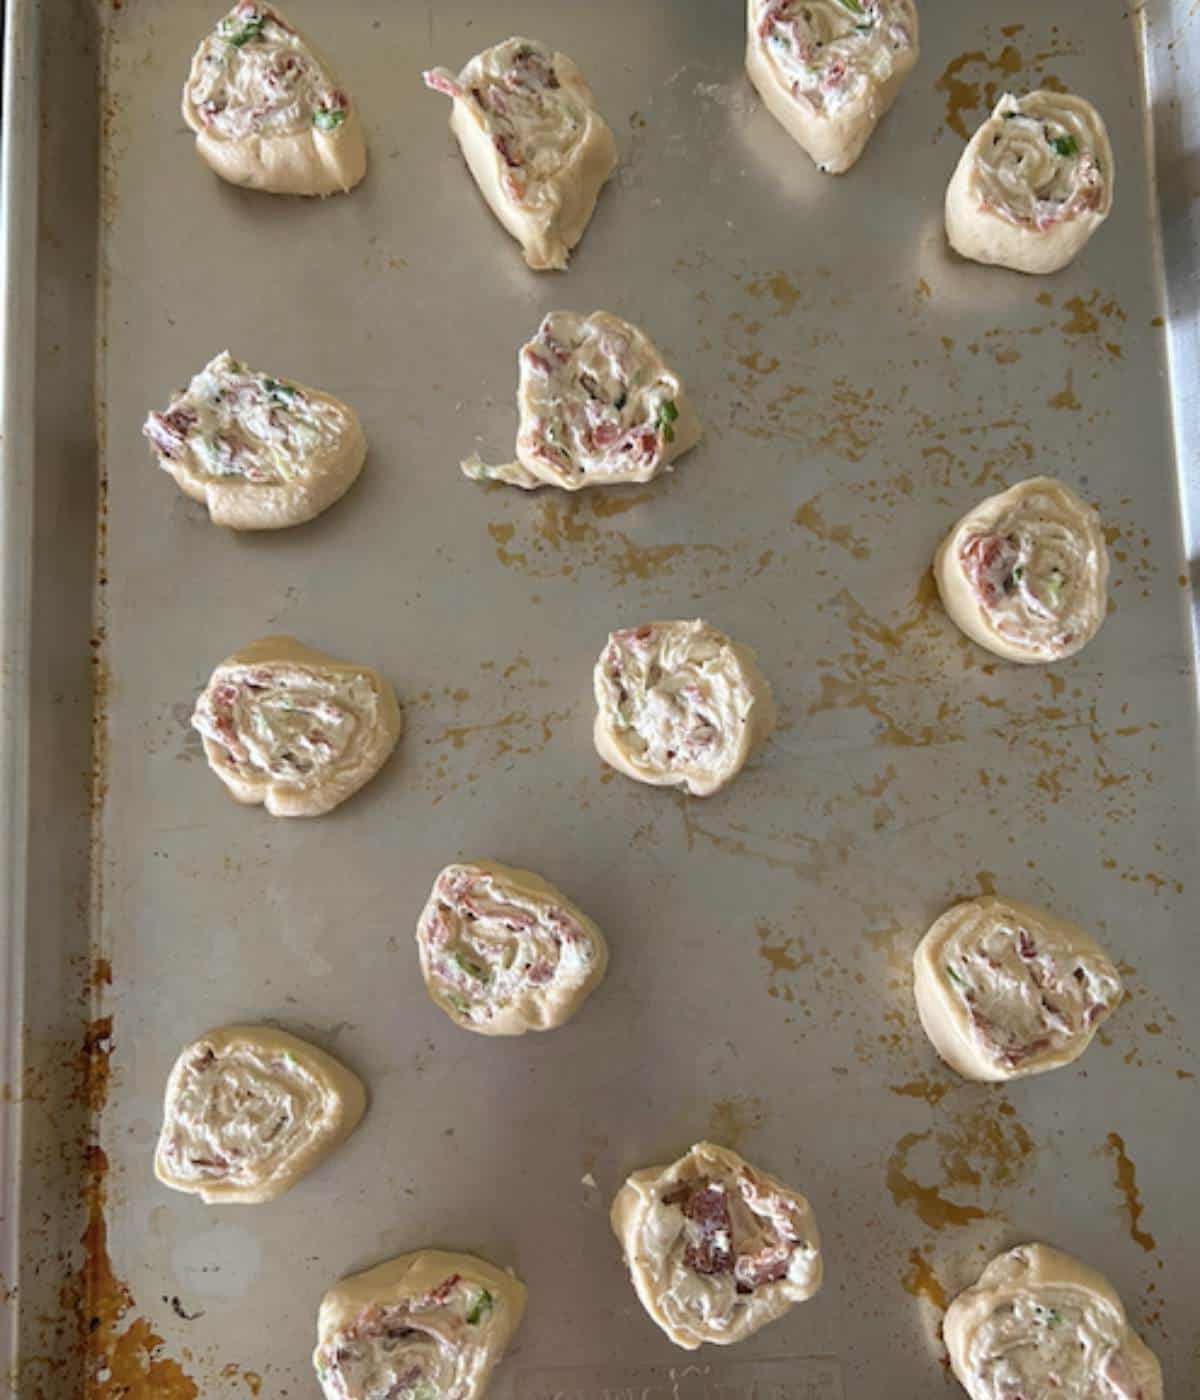 Bacon pinwheels on cookie sheet before baking.